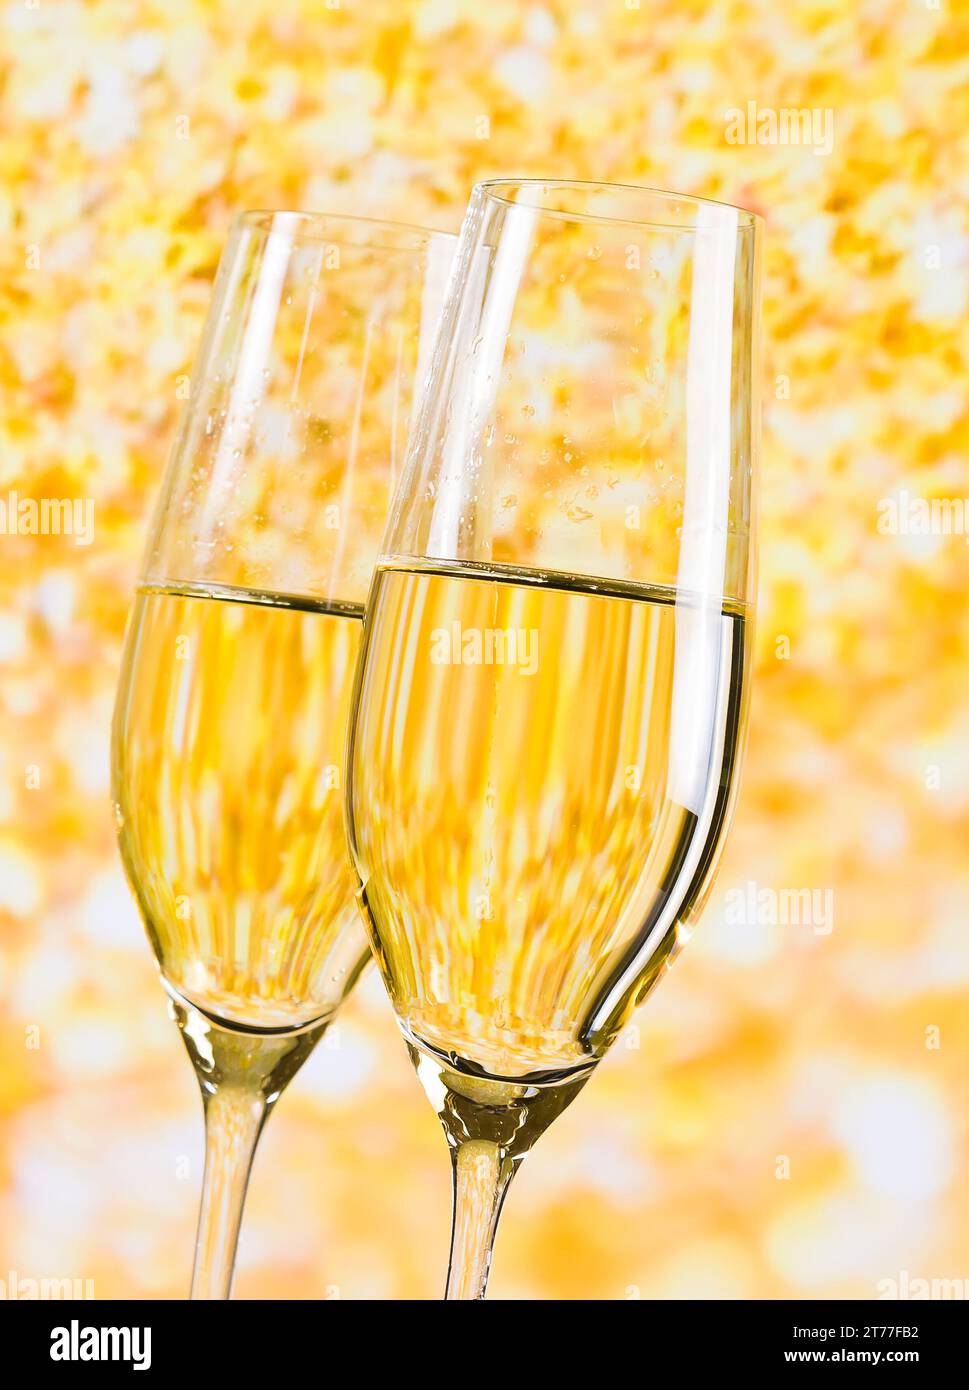 due flute di champagne su sfondo chiaro dorato, concetto di lusso Foto Stock